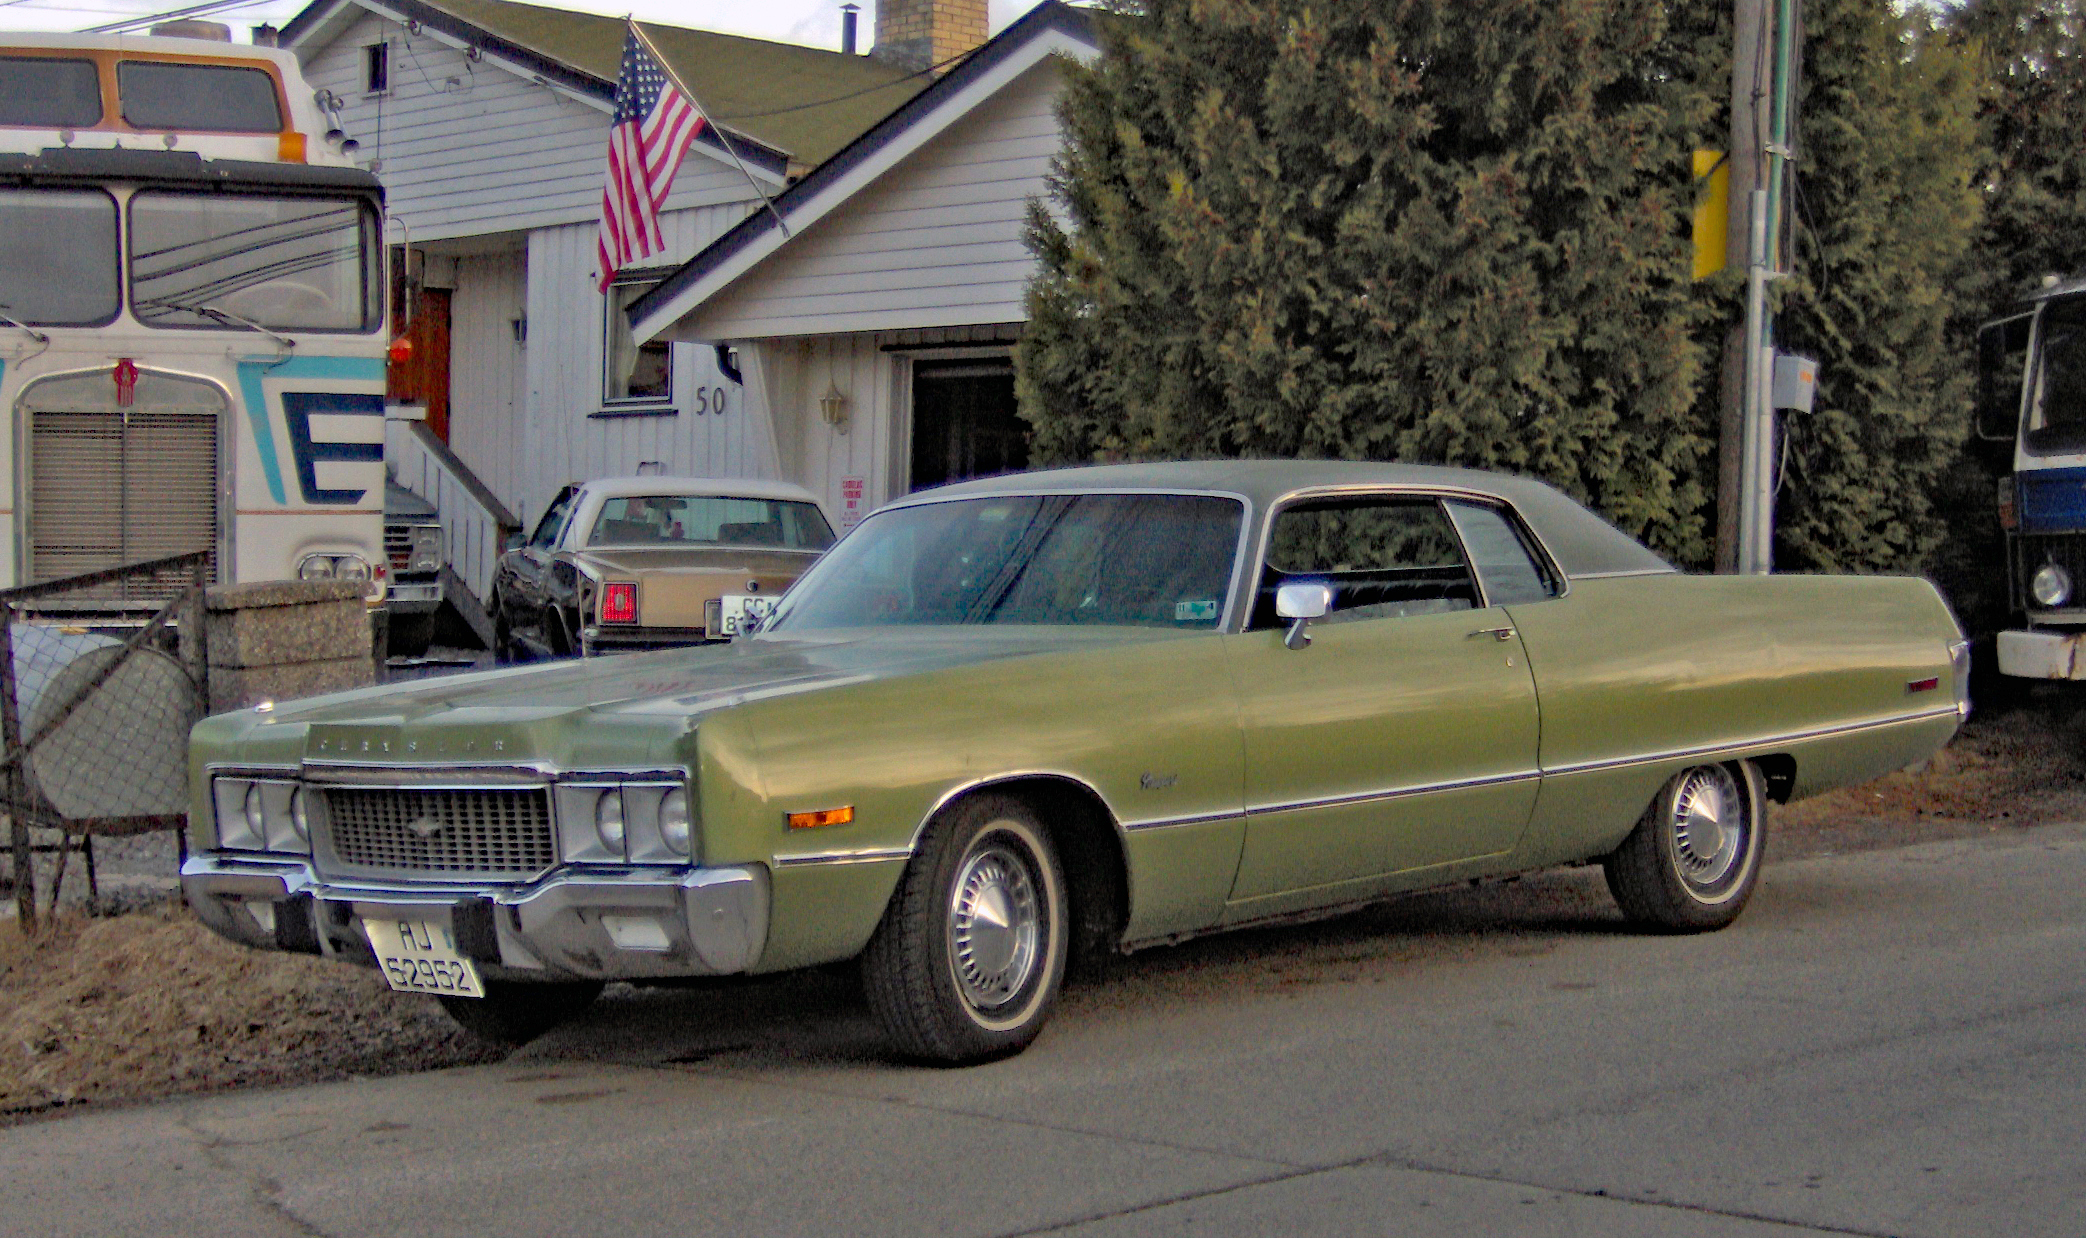 237-1973 Chrysler Newport 01. Eier- medlem 237 May